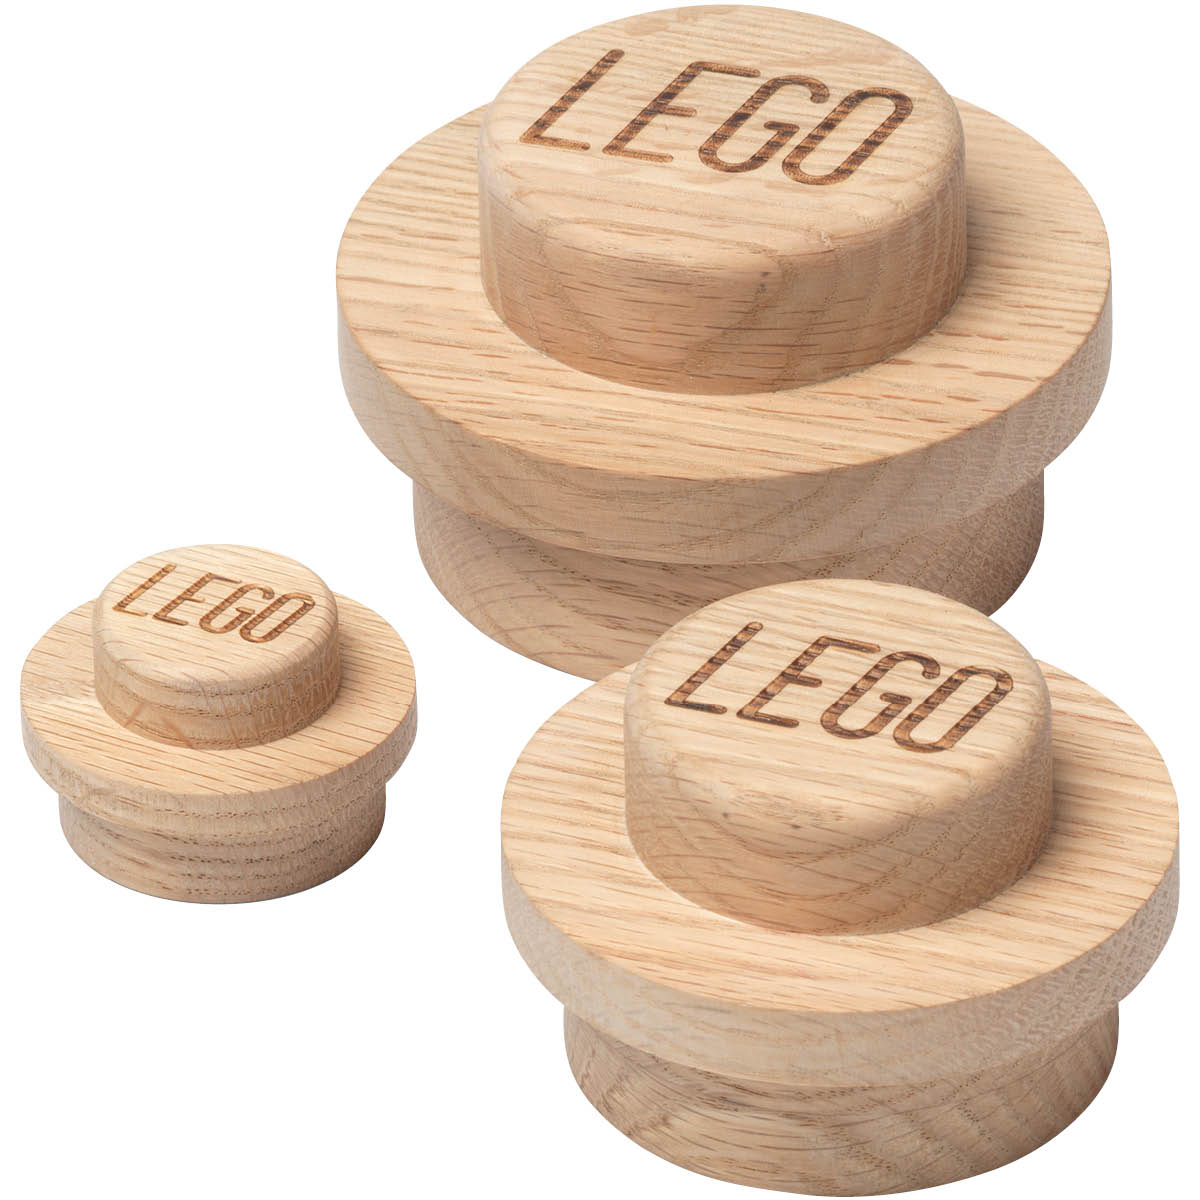 NHG Lego Wooden Seinäkoukku 3 kpl Tammi